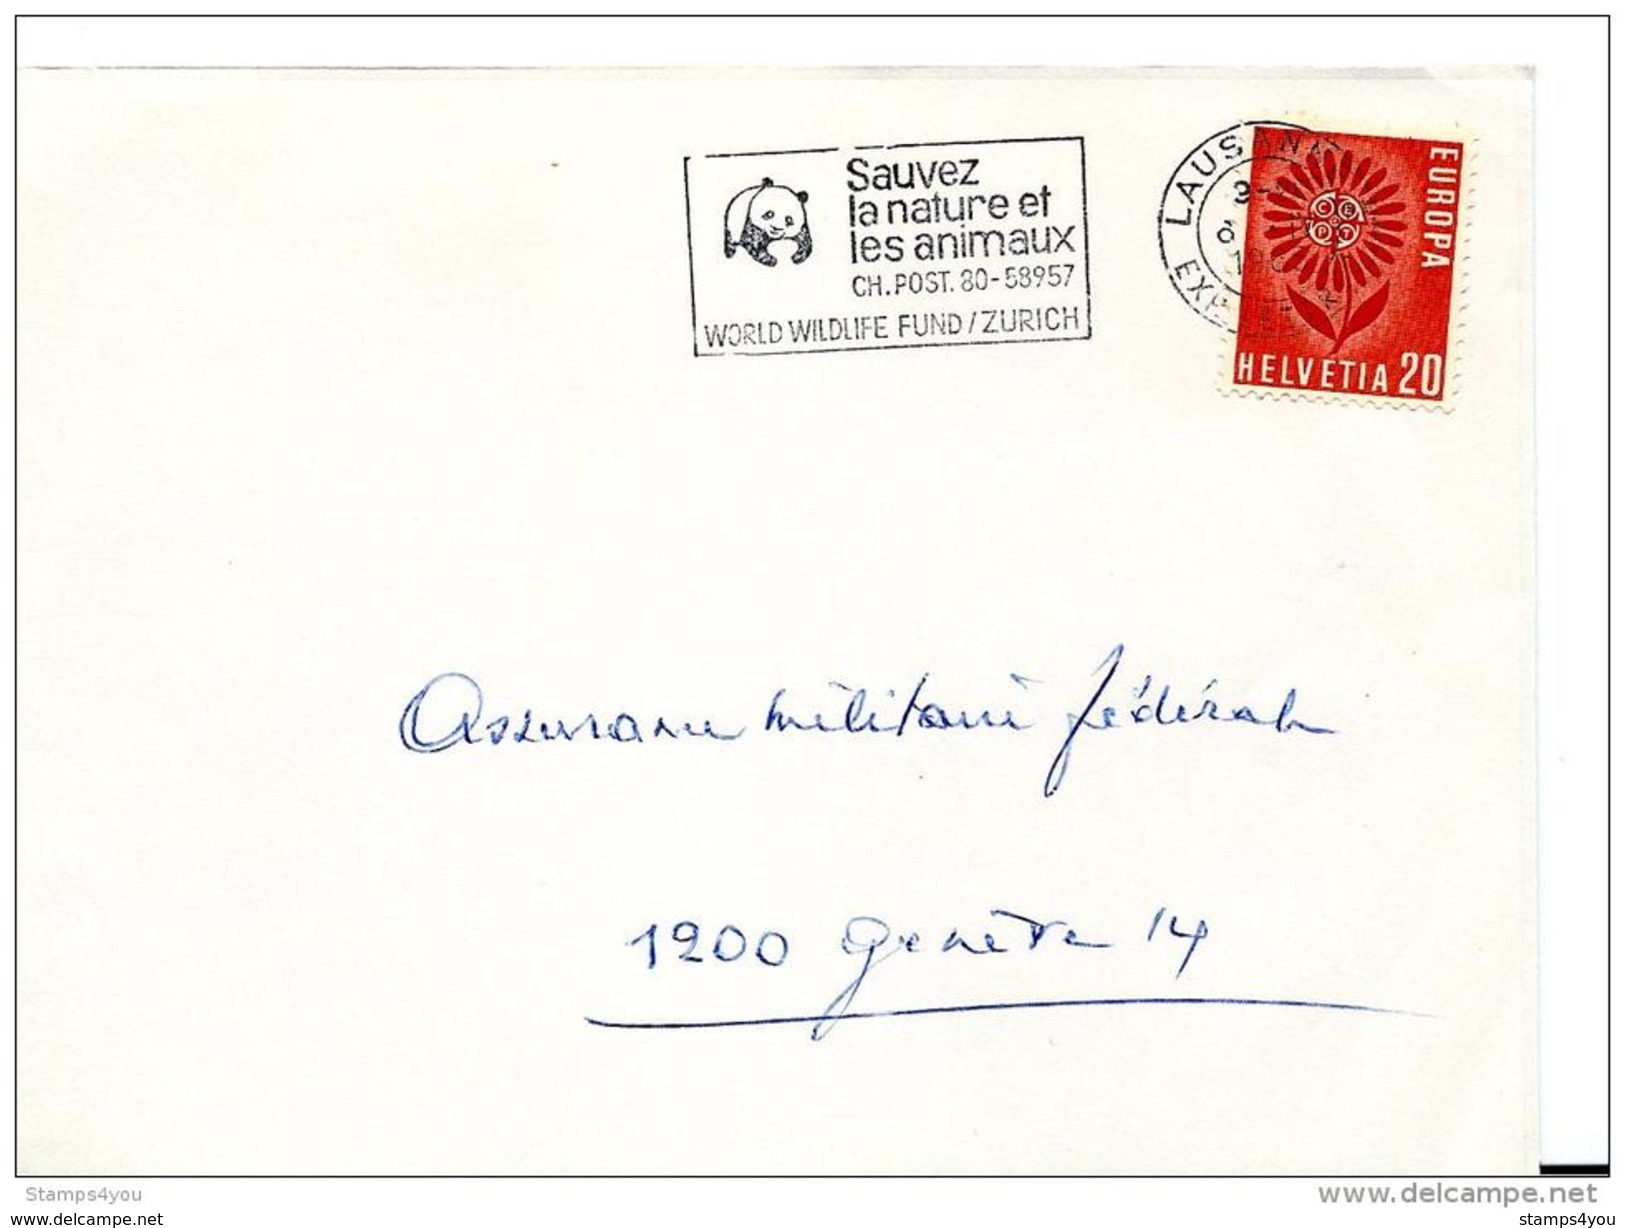 25263 - Fragement D'enveloppe Suisse Avec Flamme "Sauvez La Nature Et Les Animaux WWF"   1965 - Lettres & Documents